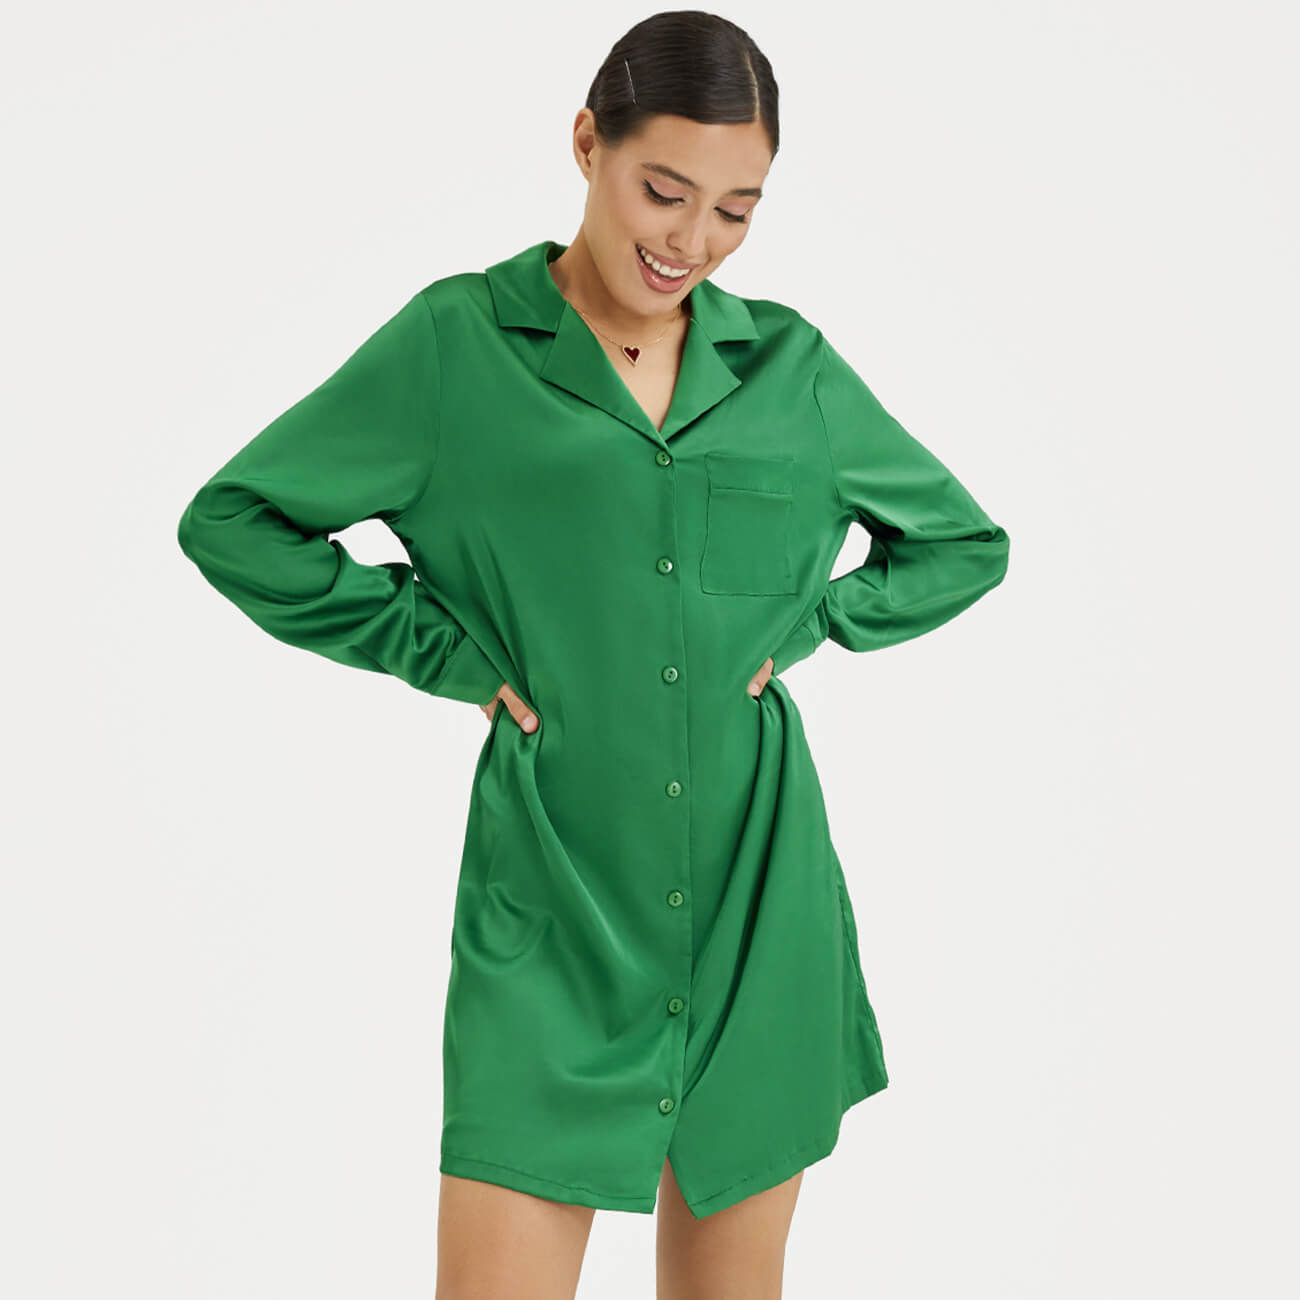 Рубашка женская, р. XL, удлиненная, с длинным рукавом, полиэстер/эластан, зеленая, Madeline рубашка женская р m удлиненная с длинным рукавом полиэстер эластан черная madeline